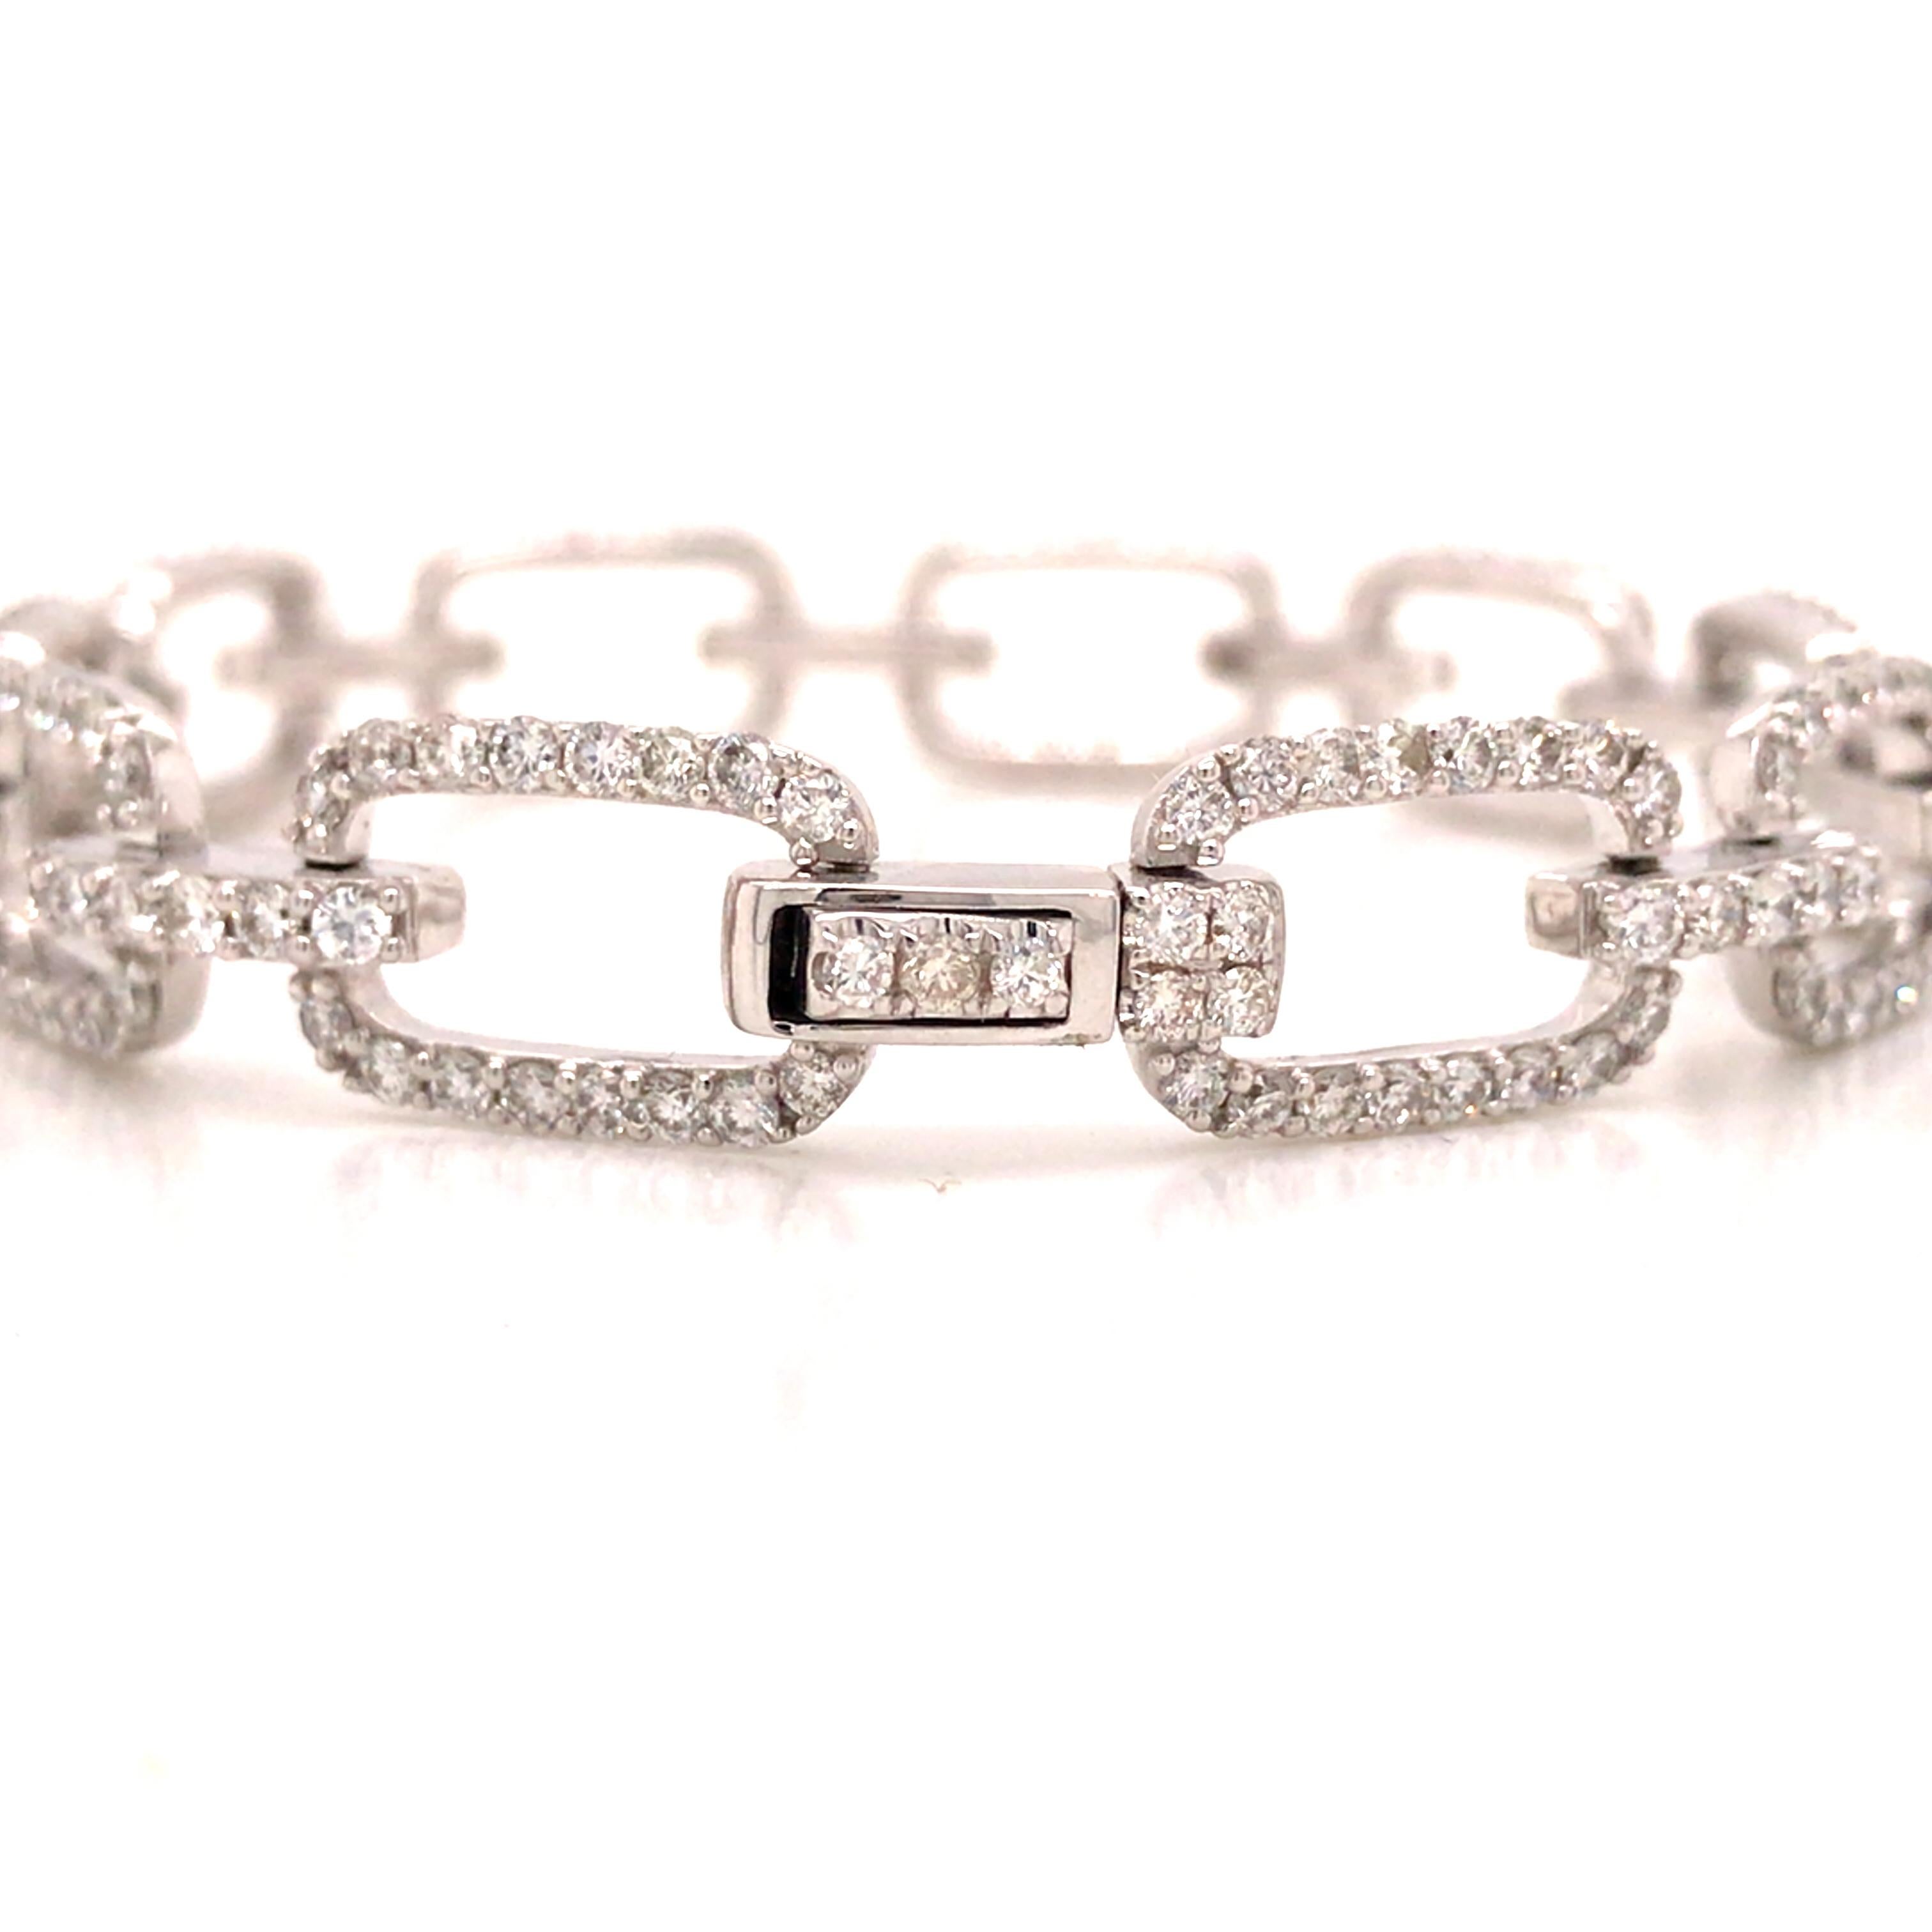 18K Diamond Link Bracelet White Gold In New Condition For Sale In Boca Raton, FL